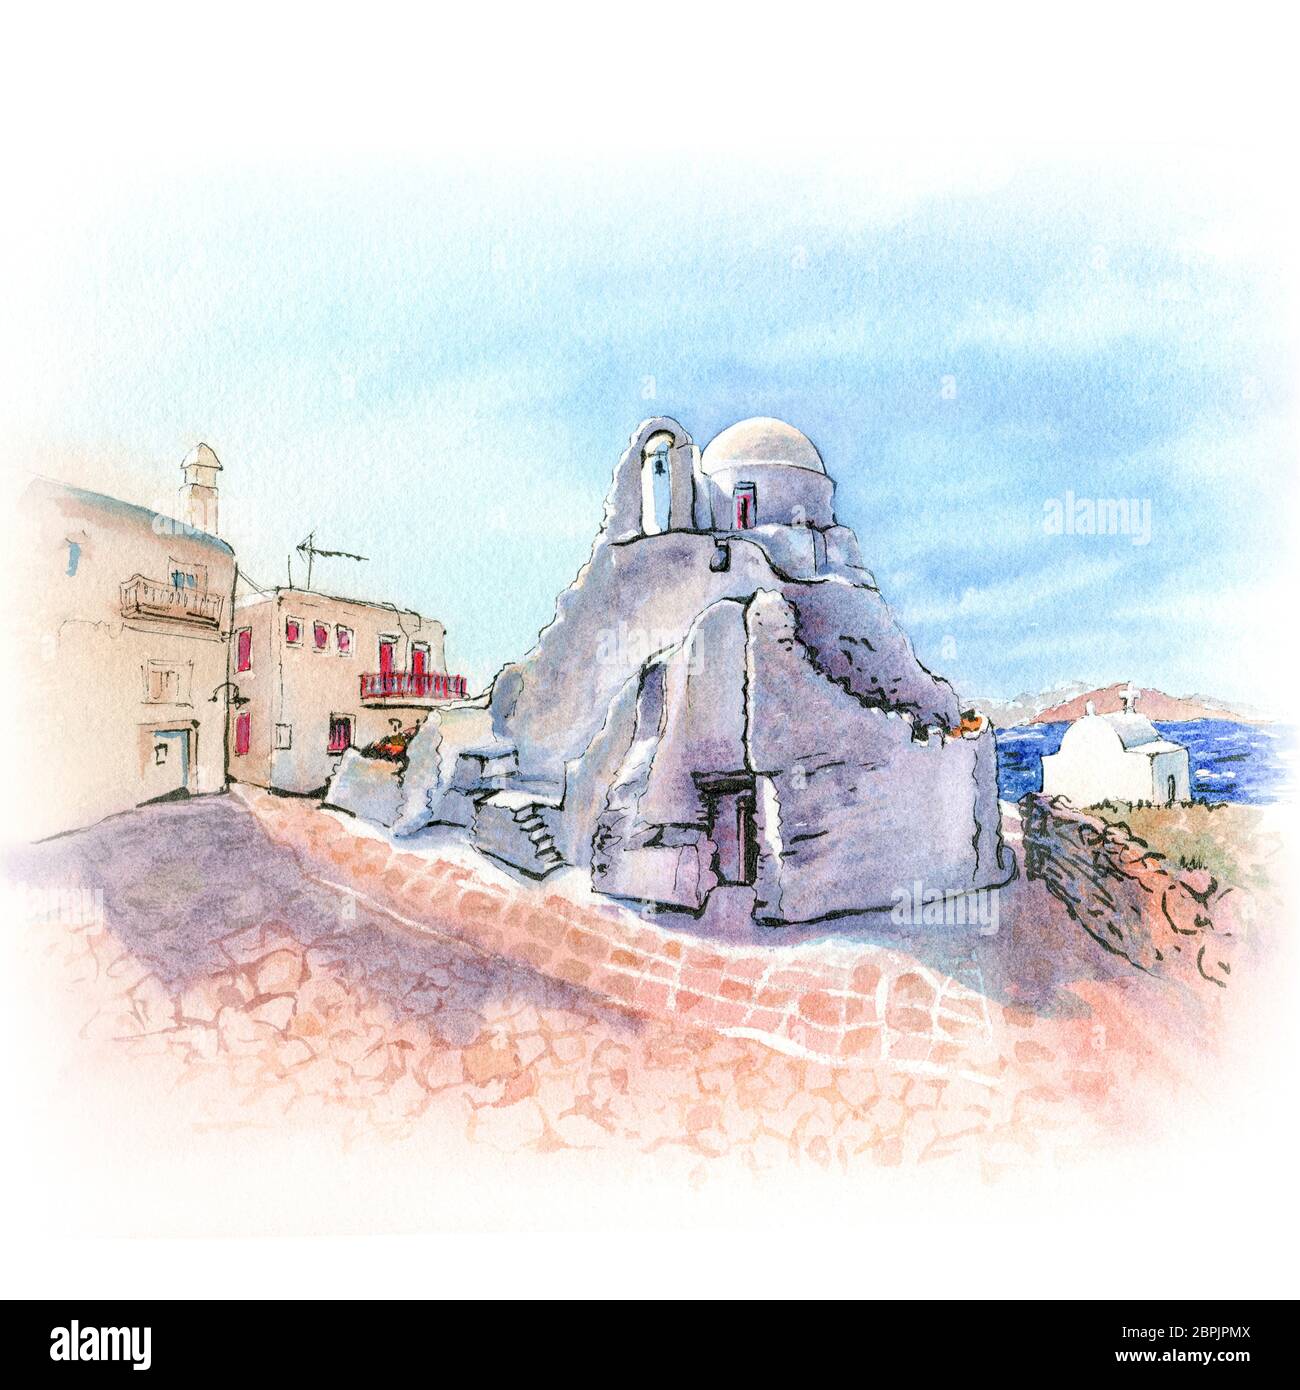 Aquarellskizze der Kirche Panagia Paraportiani, die berühmtesten architektonischen Strukturen Griechenlands, auf der Insel Mykonos, Griechenland Stockfoto